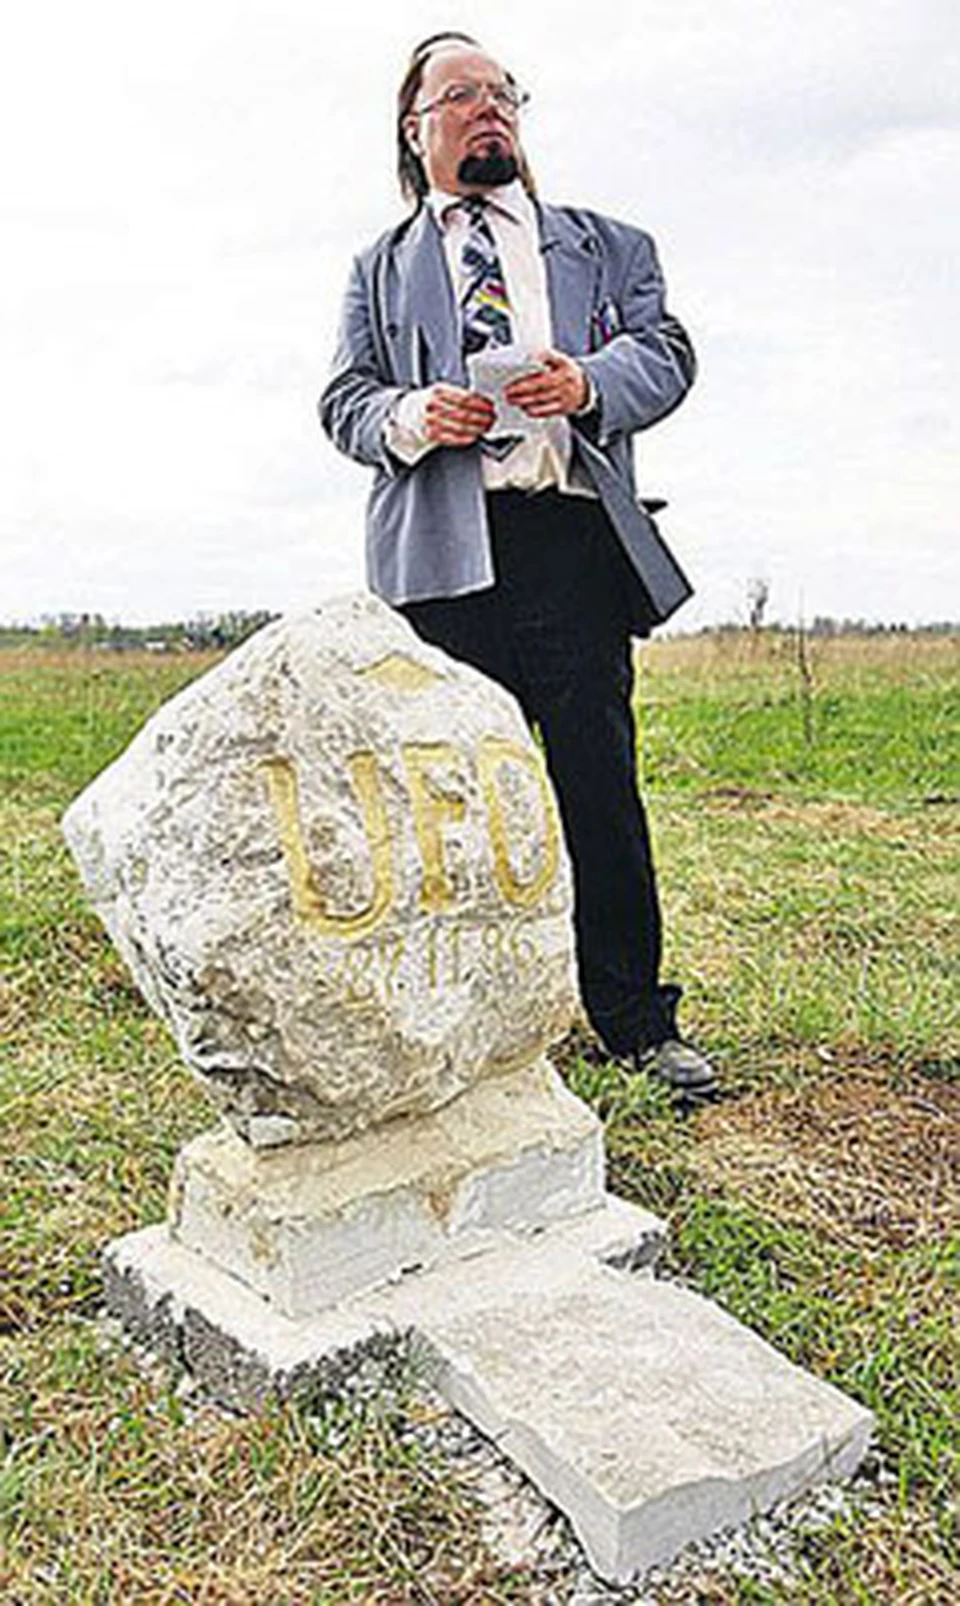 Скульптор Мати Яксон увековечил «летающую тарелку» в камне.